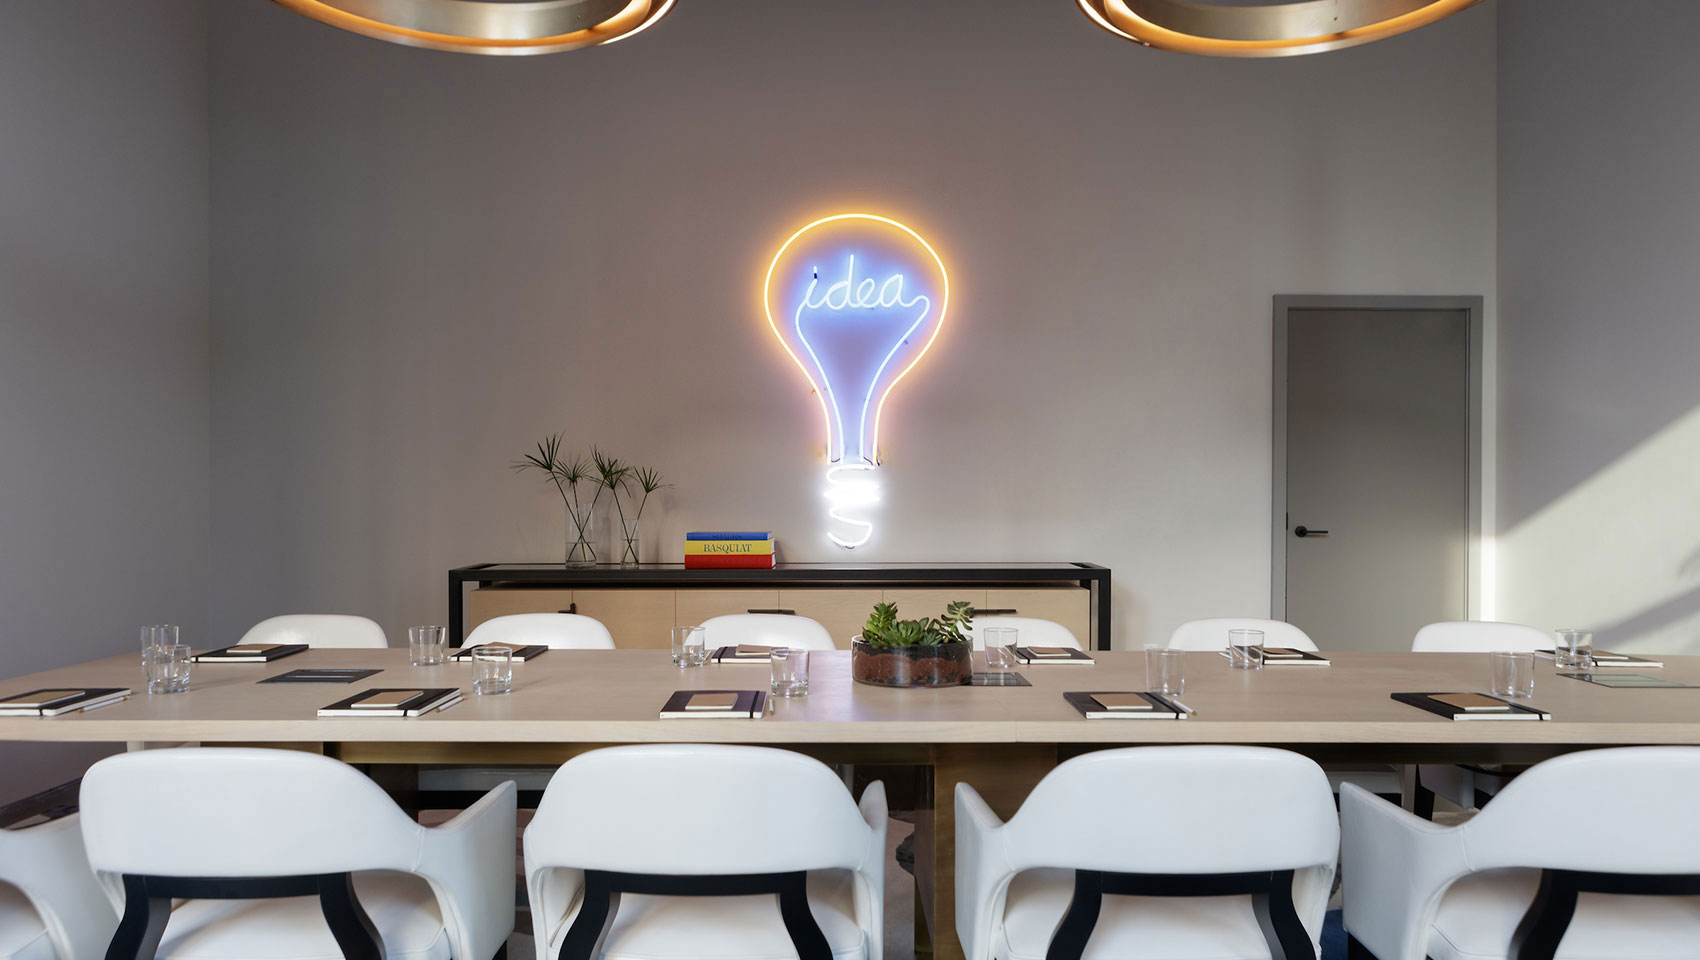 Meeting room setup with lightbulb neon light on wall